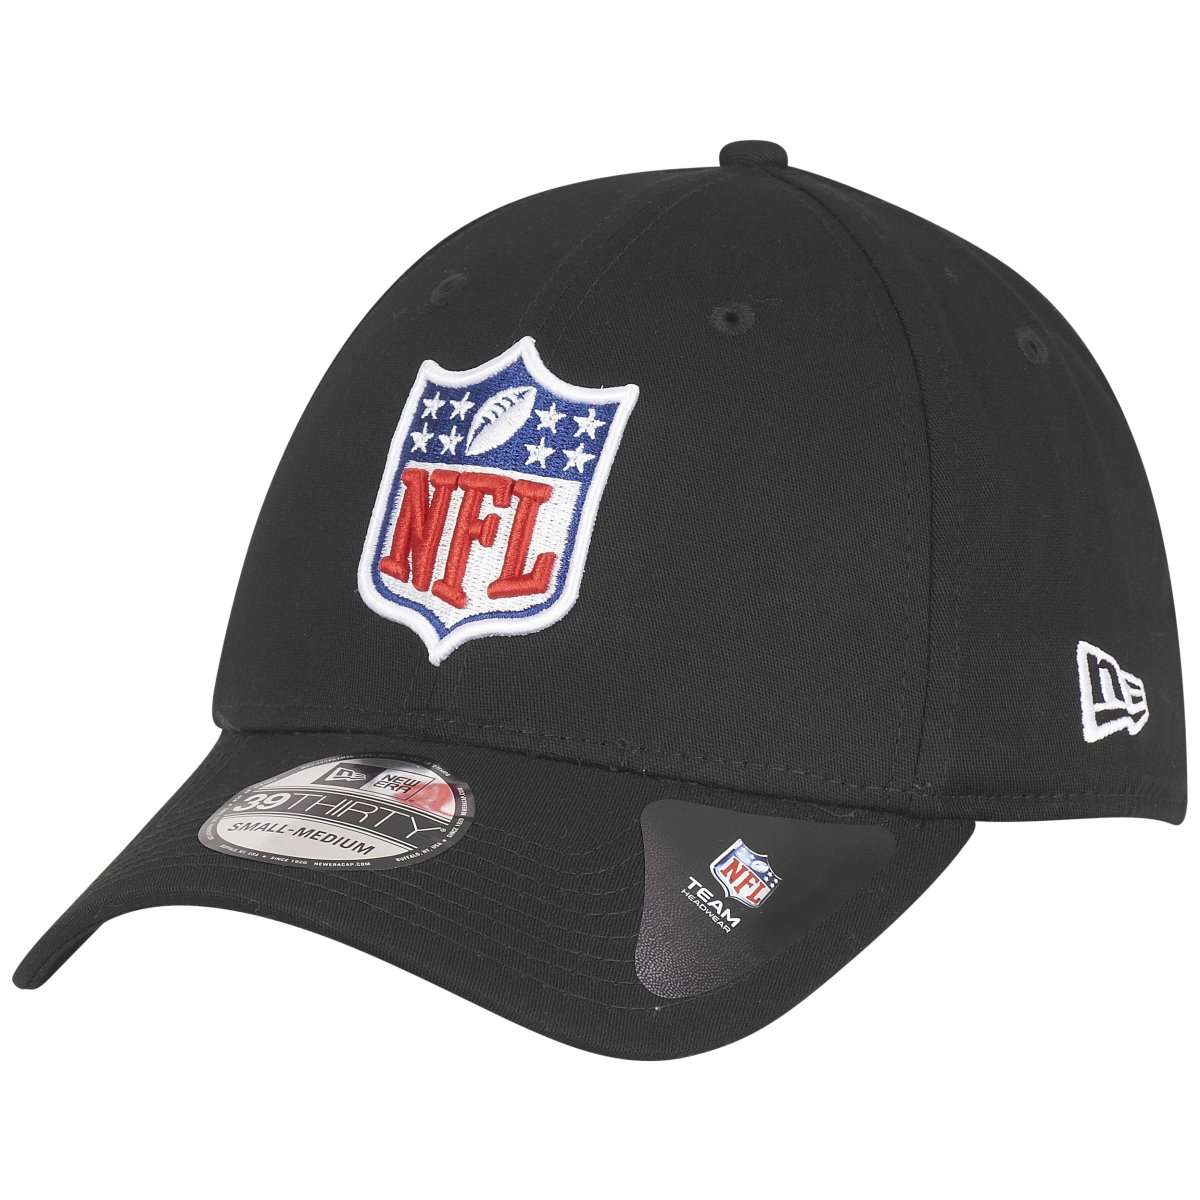 New Era 39Thirty Stretch Cap NFL SHIELD schwarz StretchFit Caps